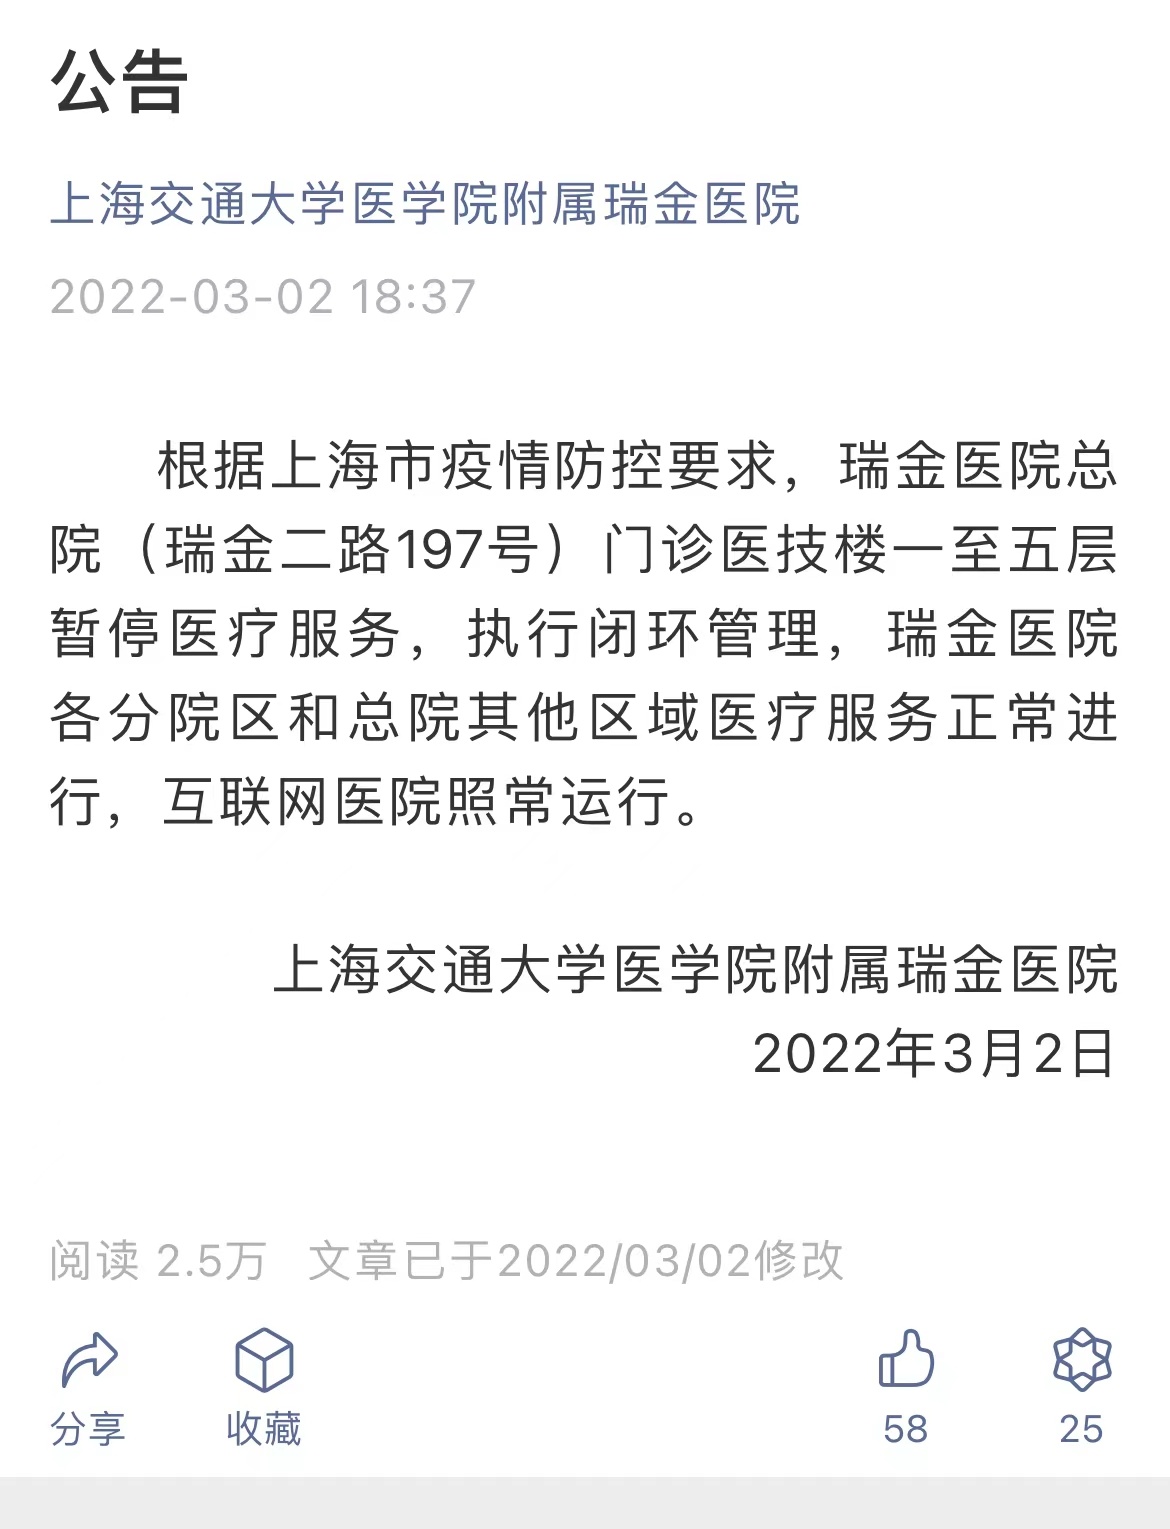 上海瑞金医院总院门诊医技楼一至五层暂停医疗服务